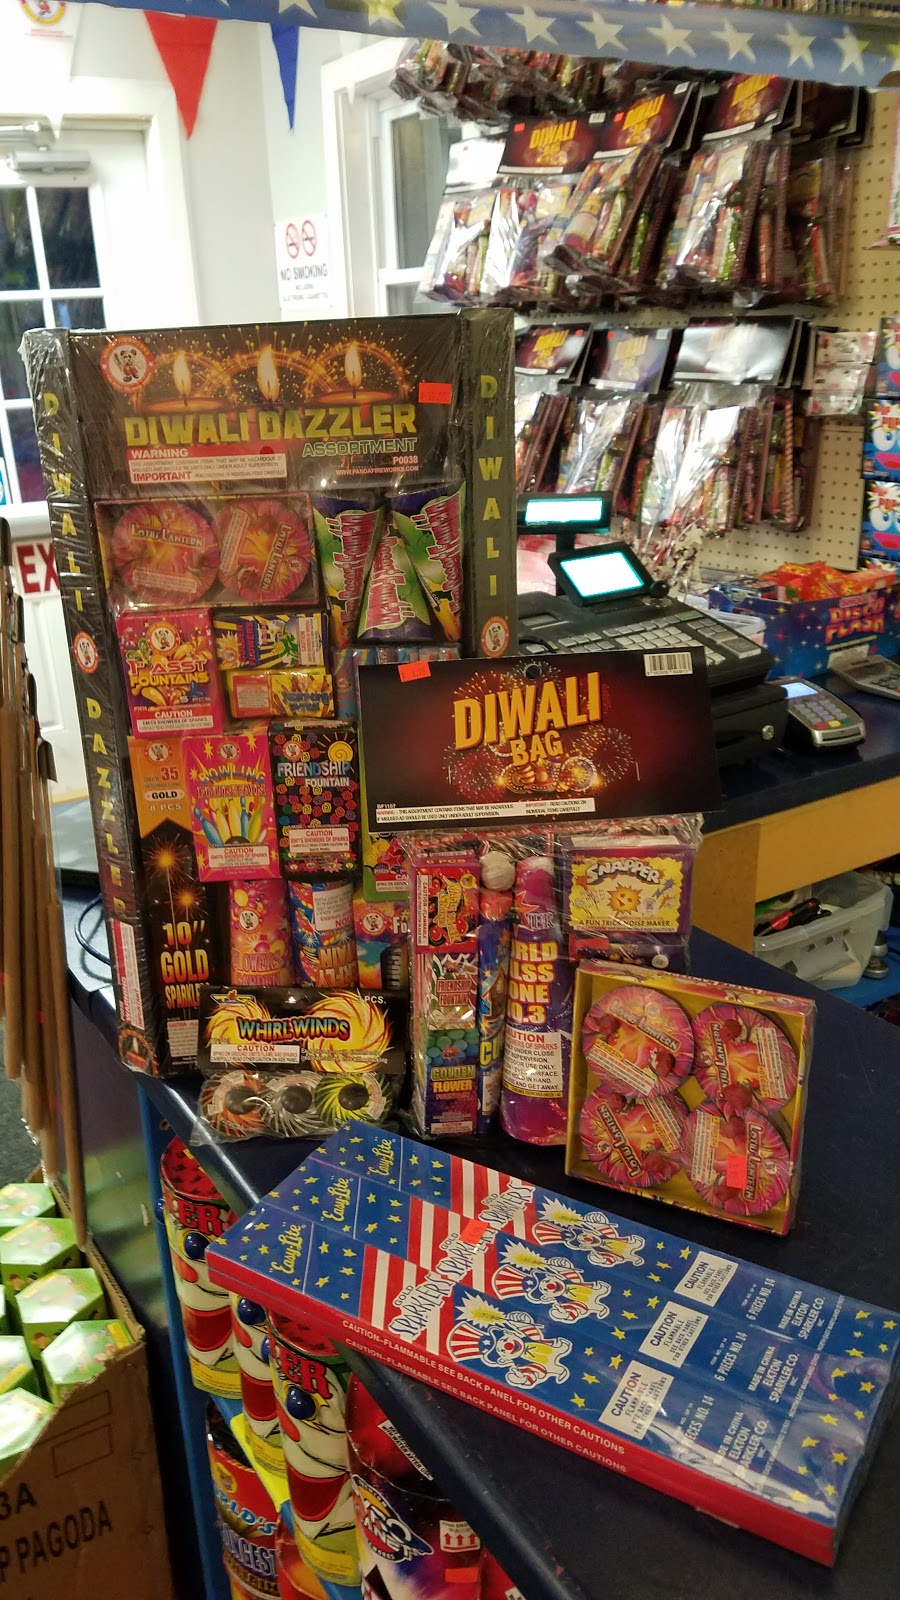 Dapkus Fireworks Inc. | 63 Commerce Cir, Durham, CT 06422 | Phone: (860) 349-9747